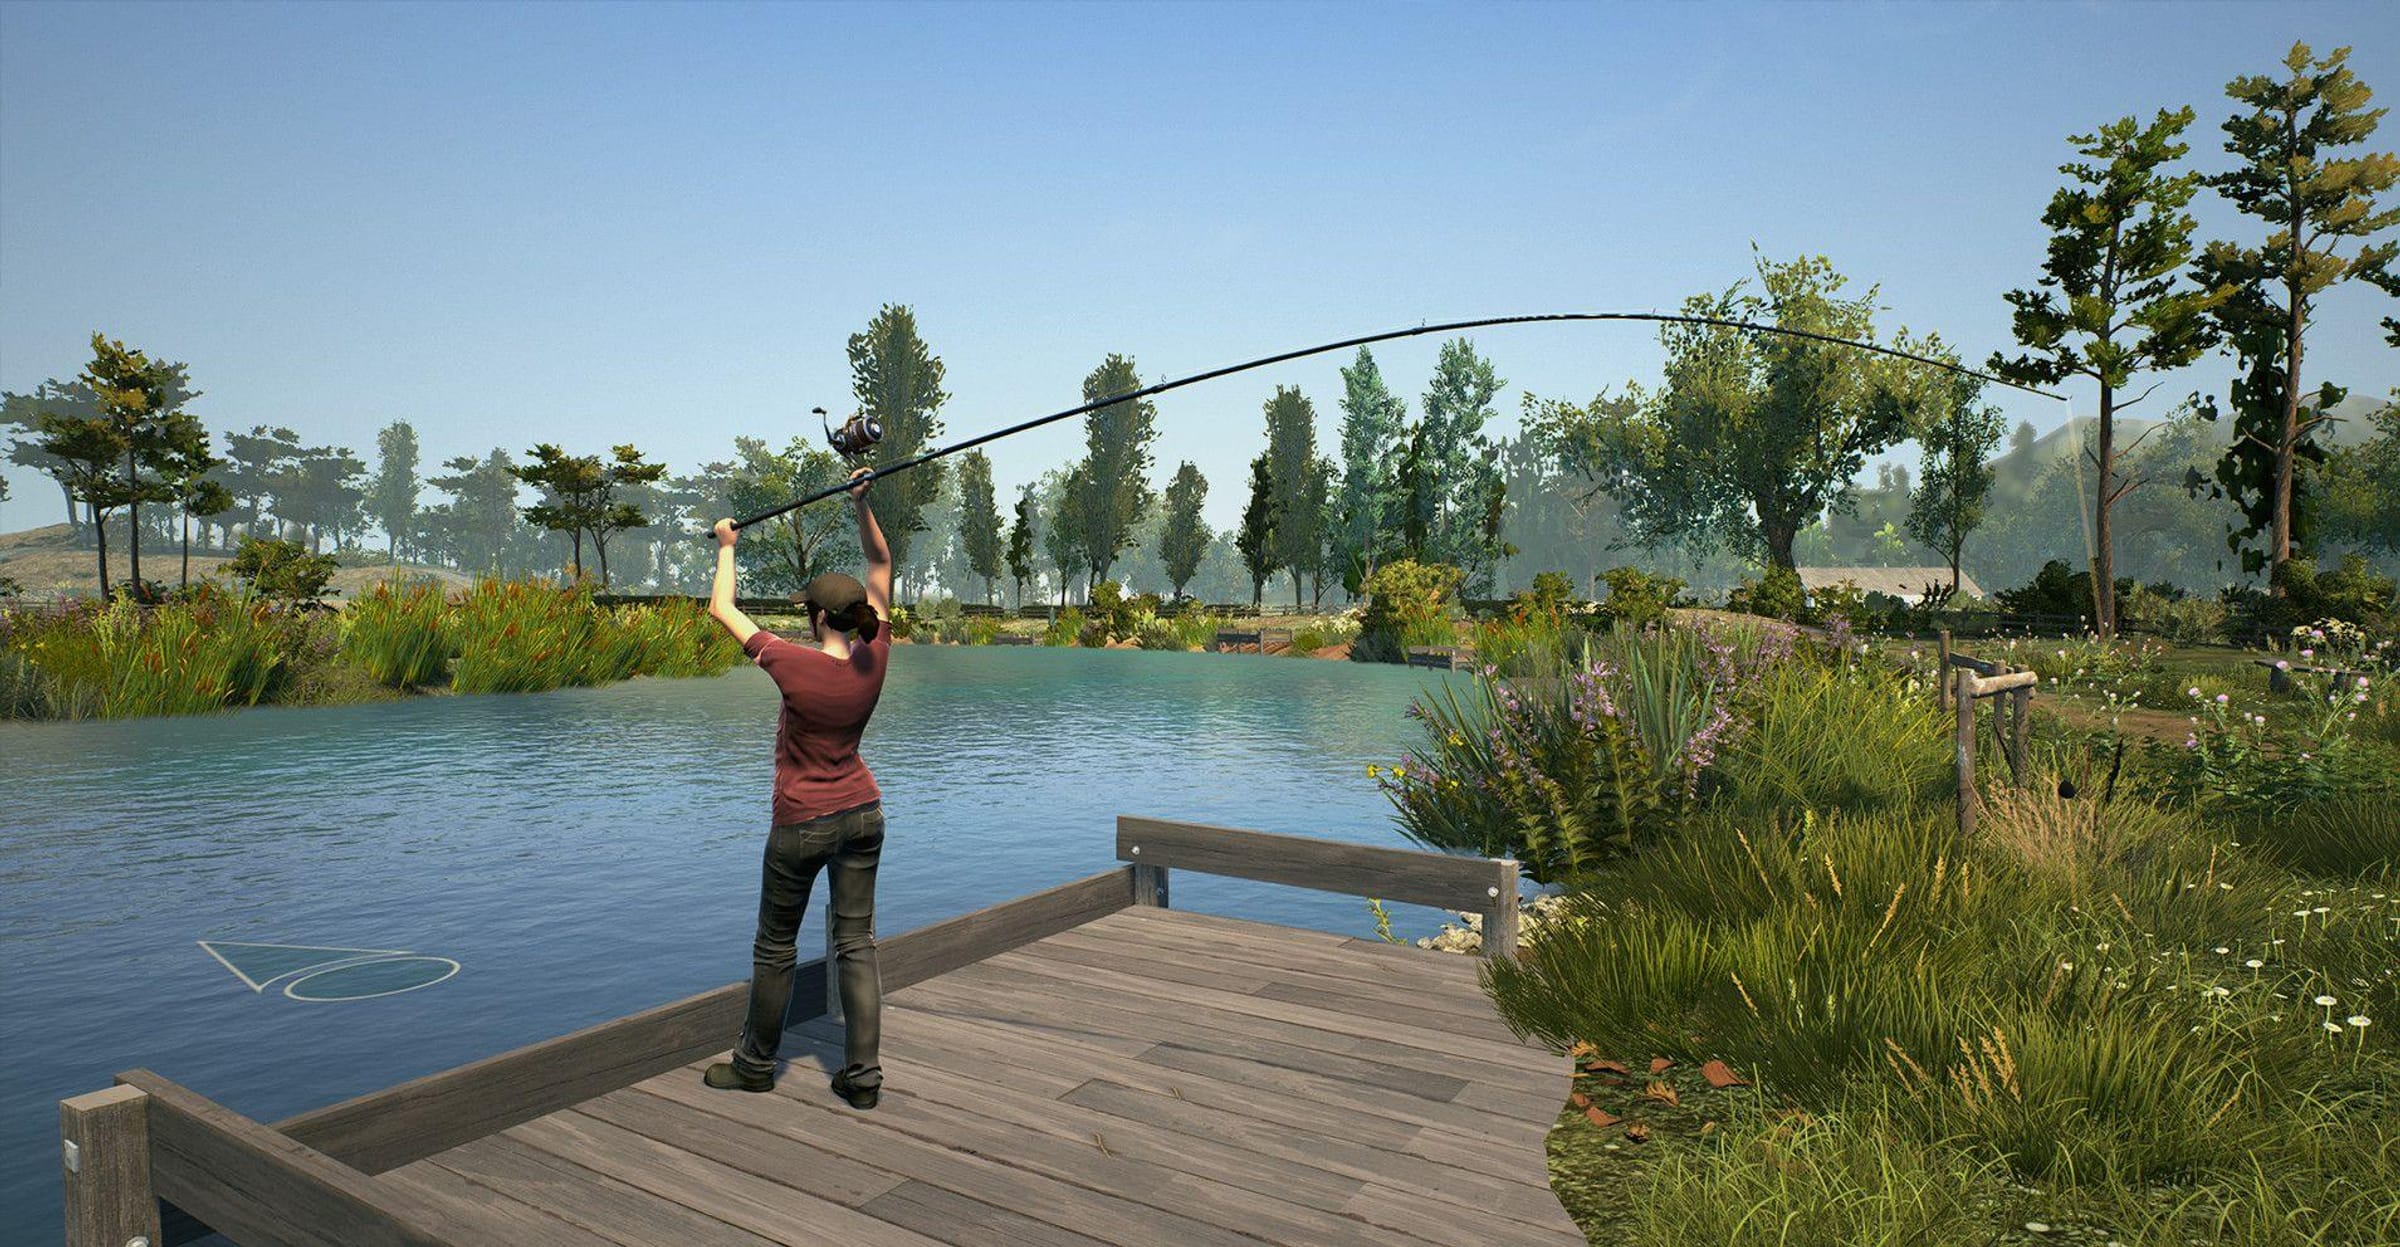 Top 30+ Fishing games - SteamPeek